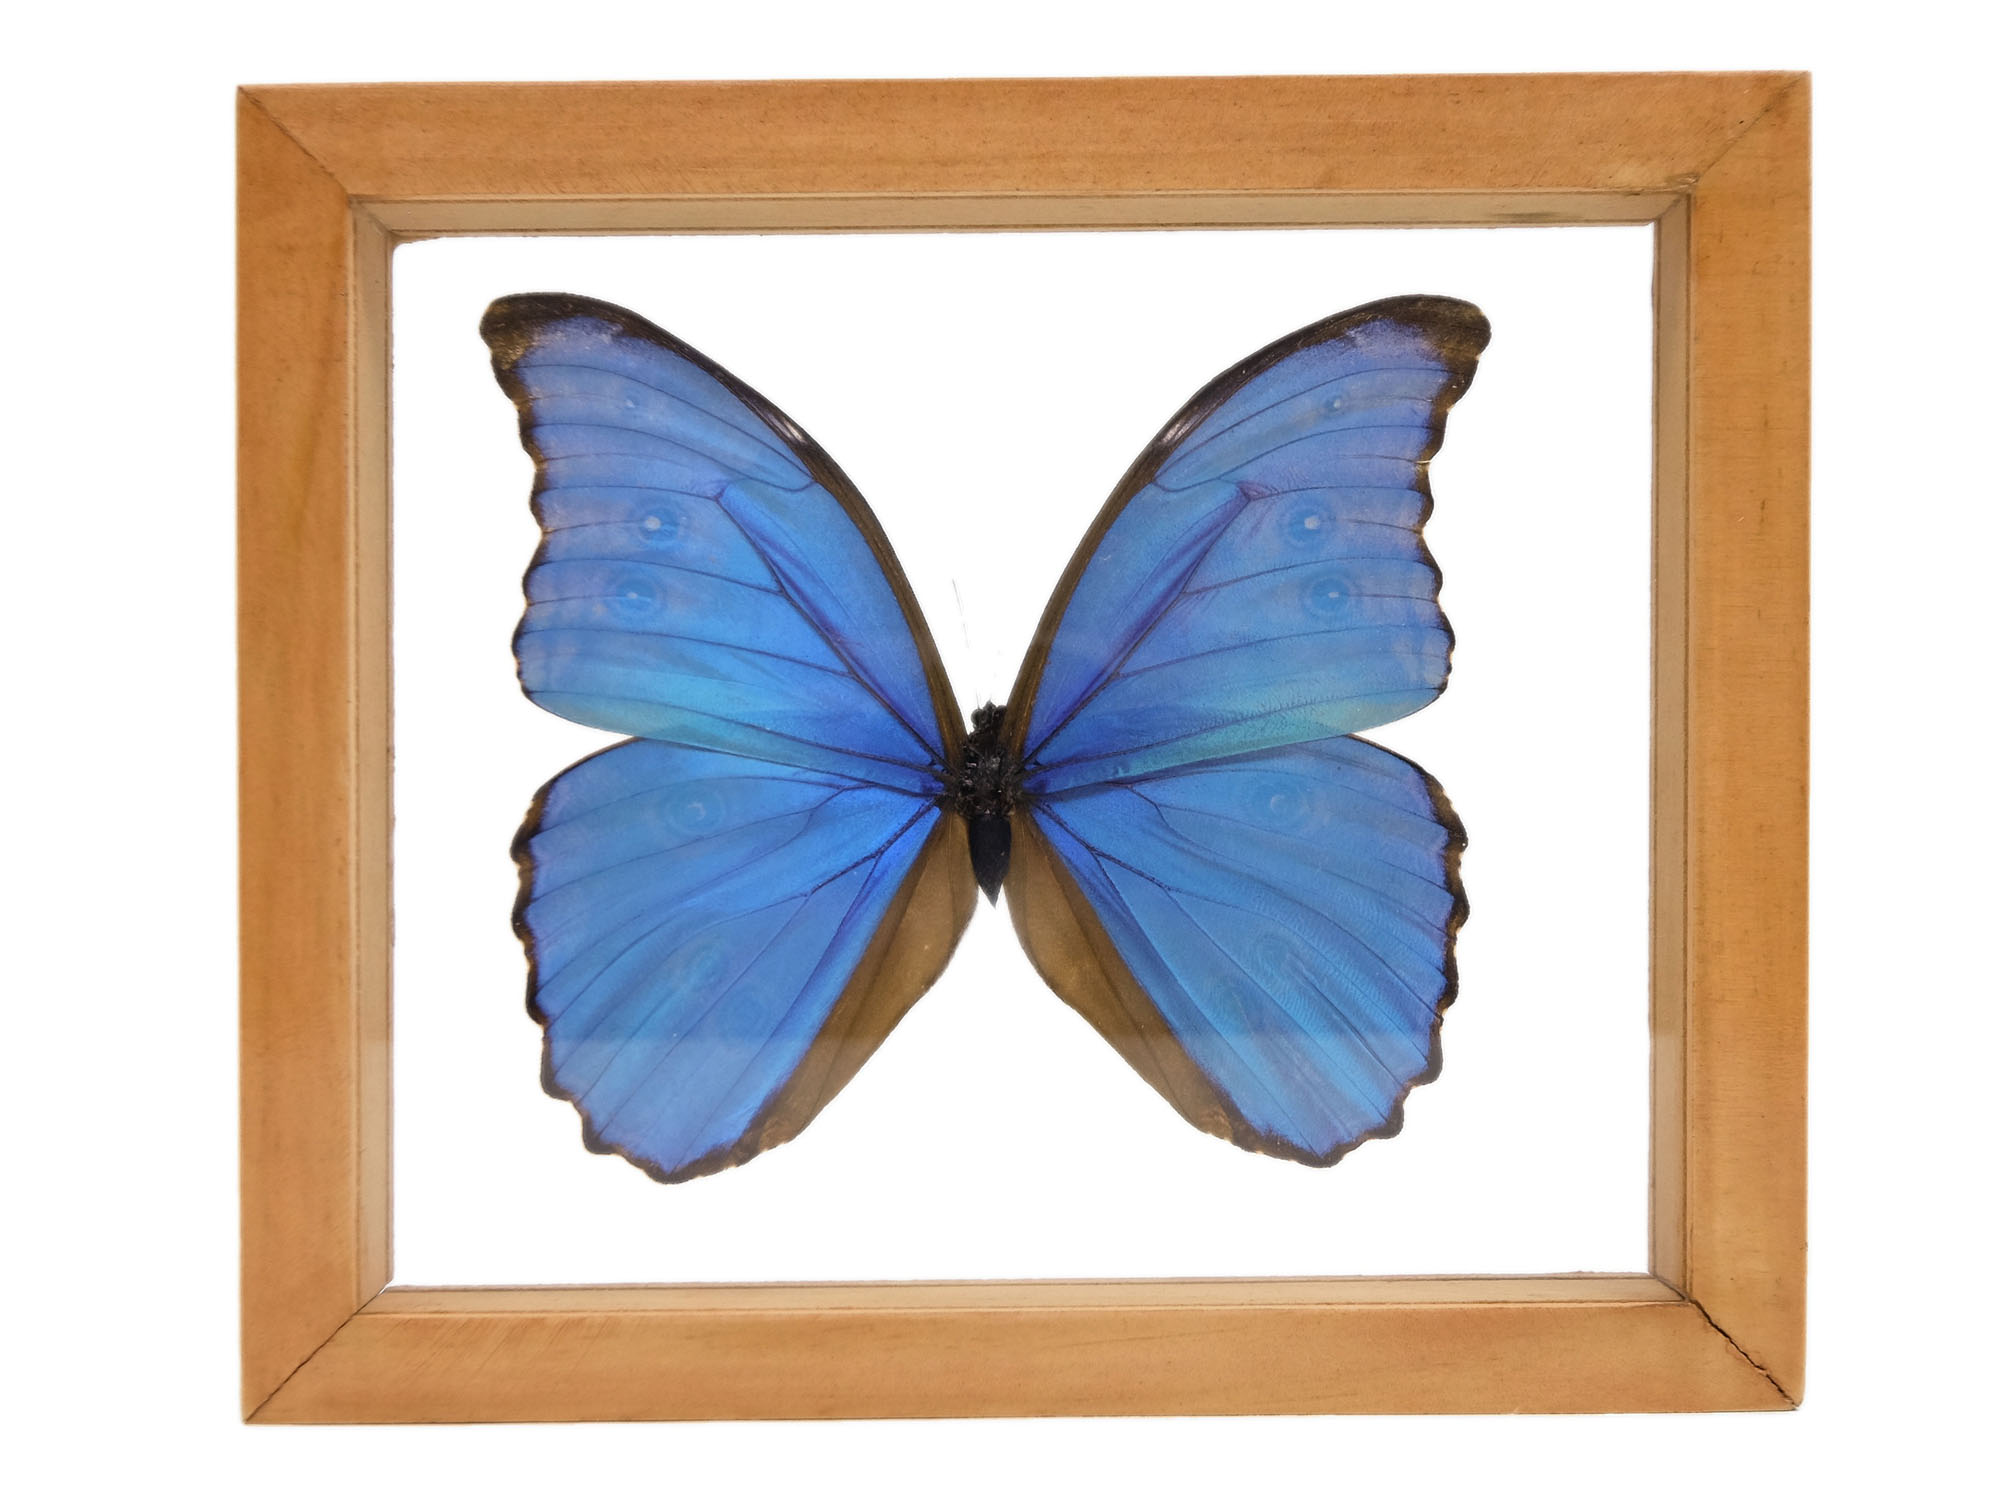 Framed Butterfly: Blue Morpho: Gallery Item 